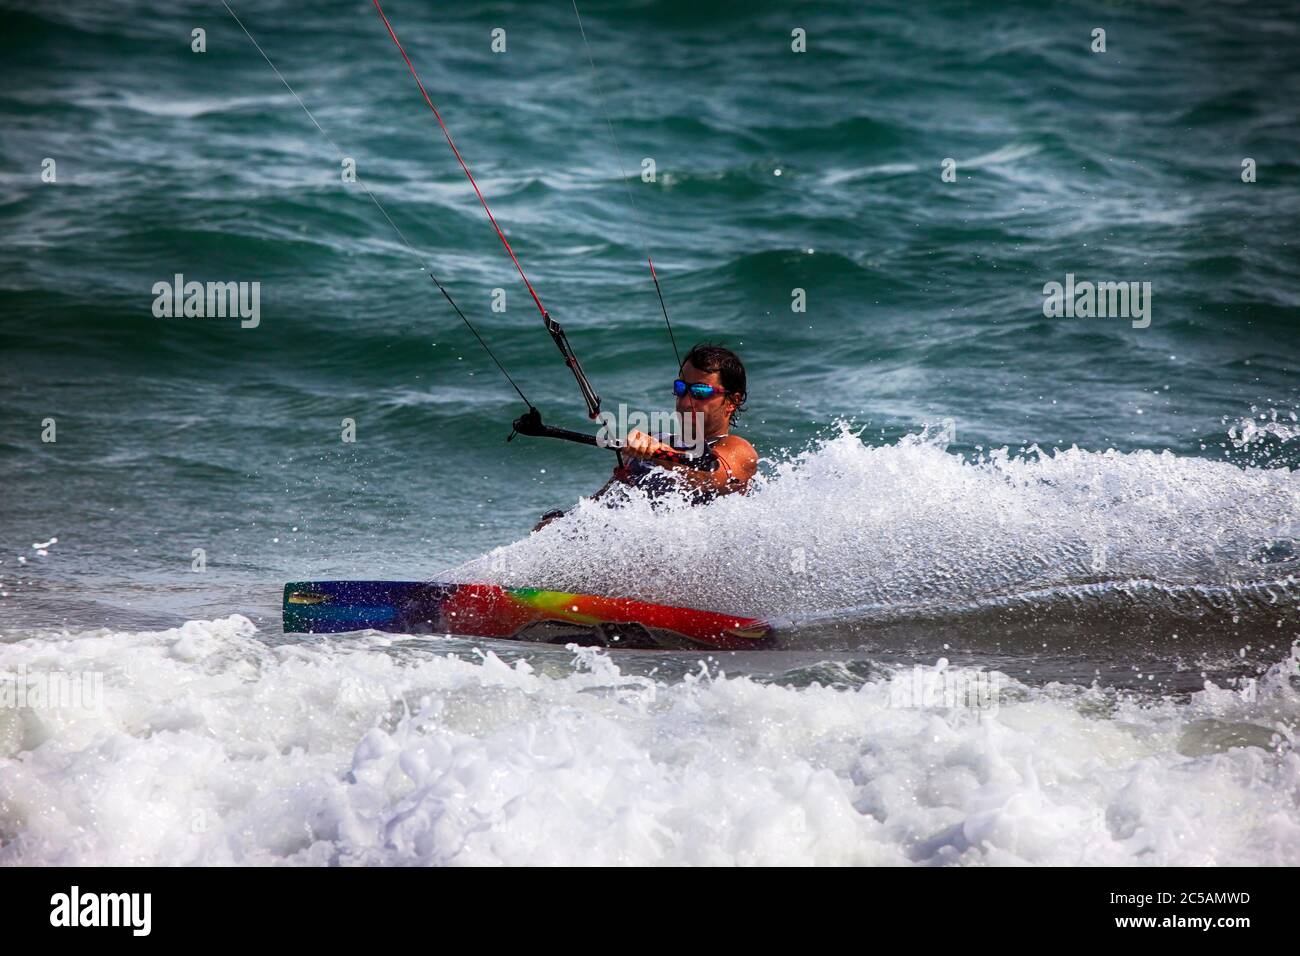 Kiteboarder enjoy surfing in ocean. Vietnam Stock Photo